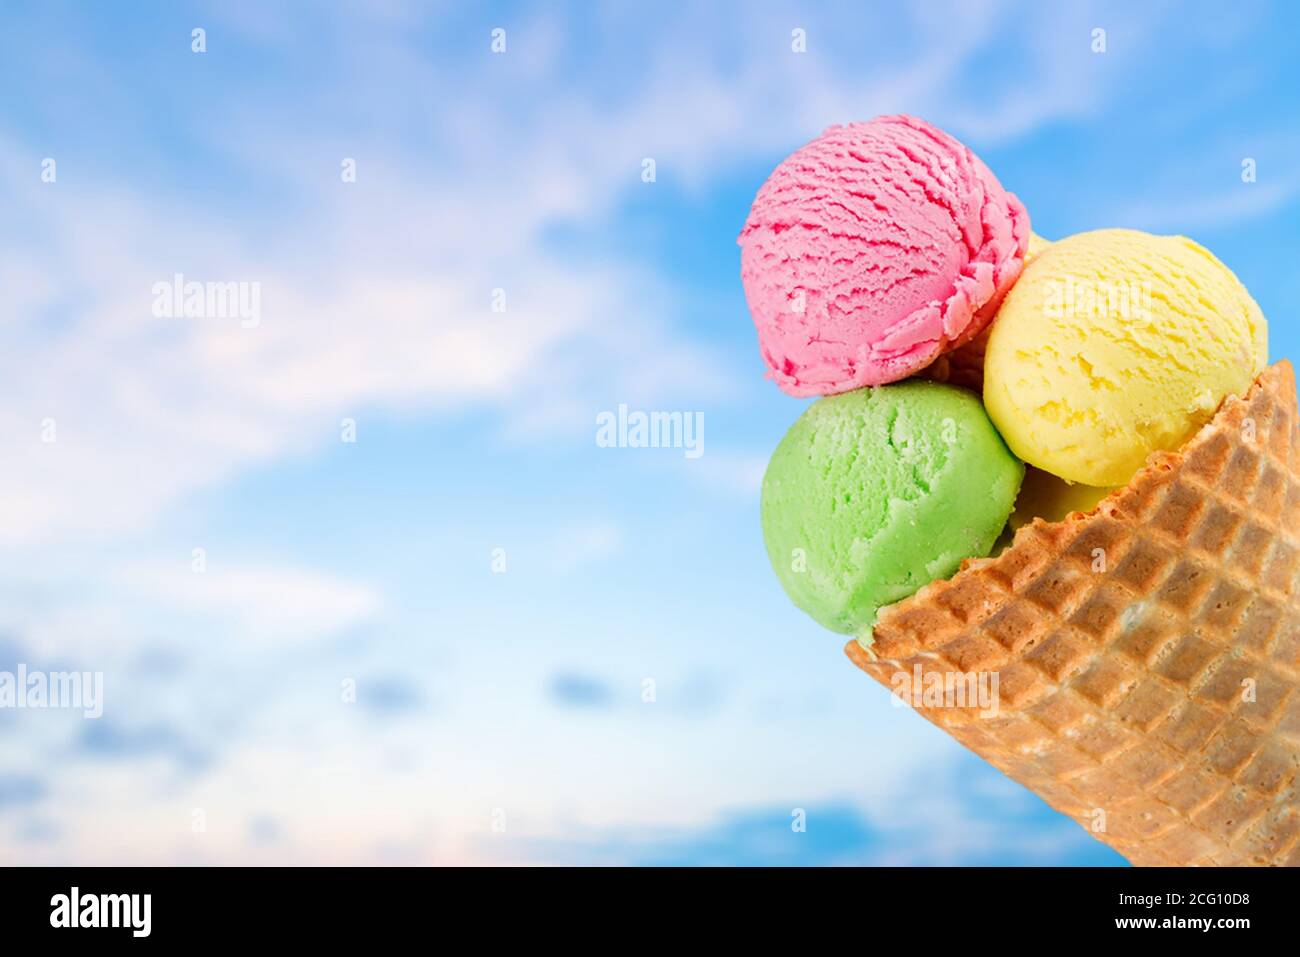 Scoops of ice cream on sky Stock Photo